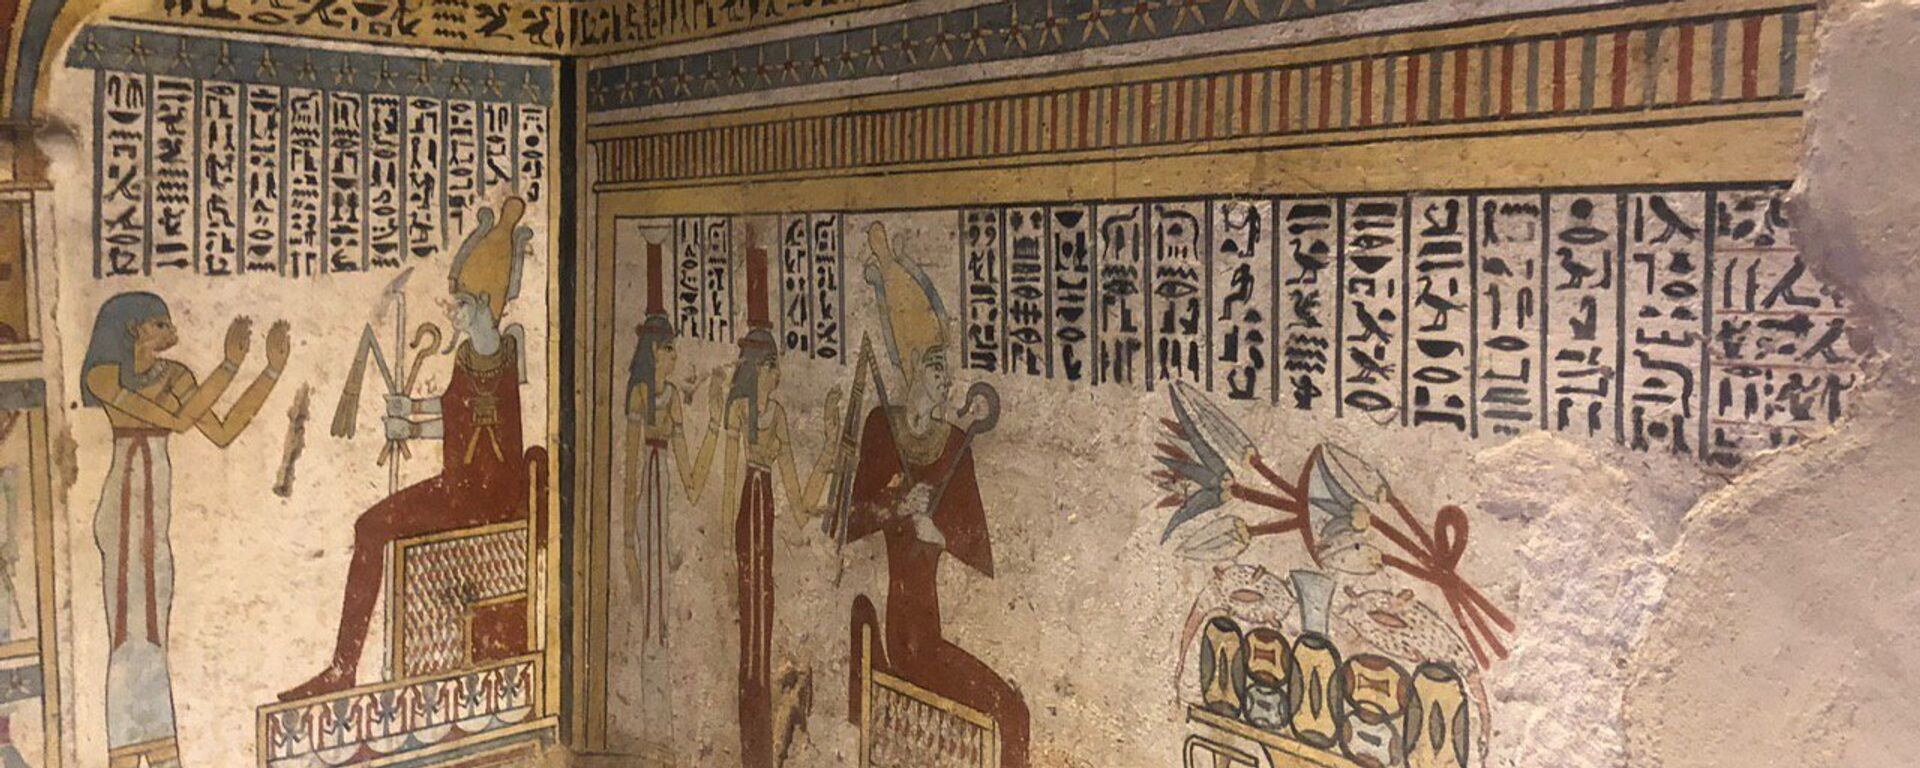 Los dibujos en las paredes de una antigua tumba en Egipto (archivo) - Sputnik Mundo, 1920, 20.03.2022